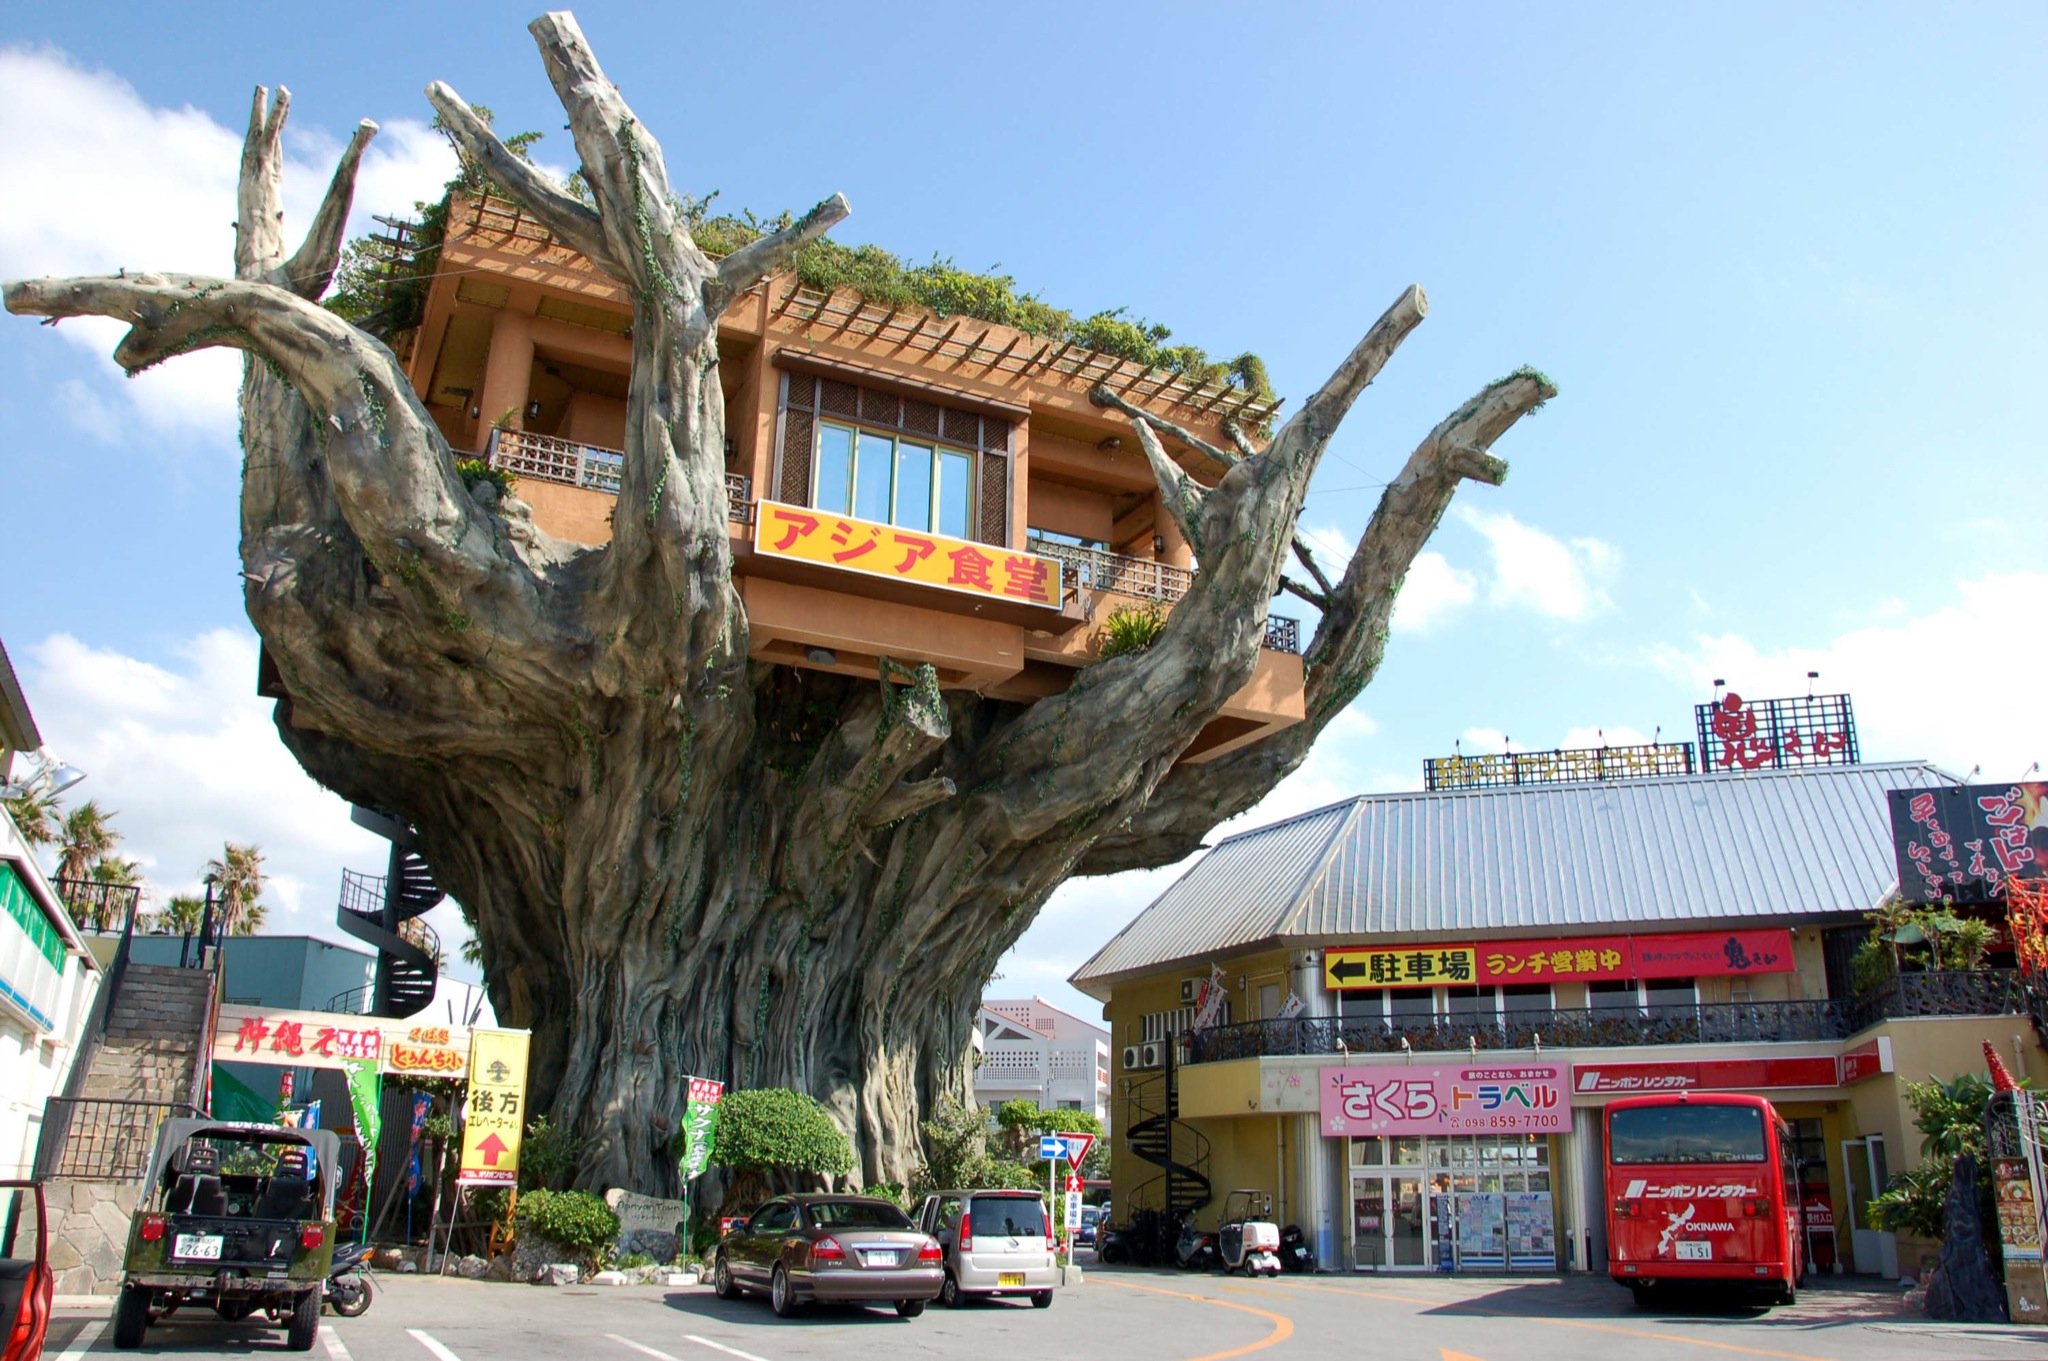 Độc đáo nhà hàng Naha Harbor Nhật Bản lơ lửng trên cây